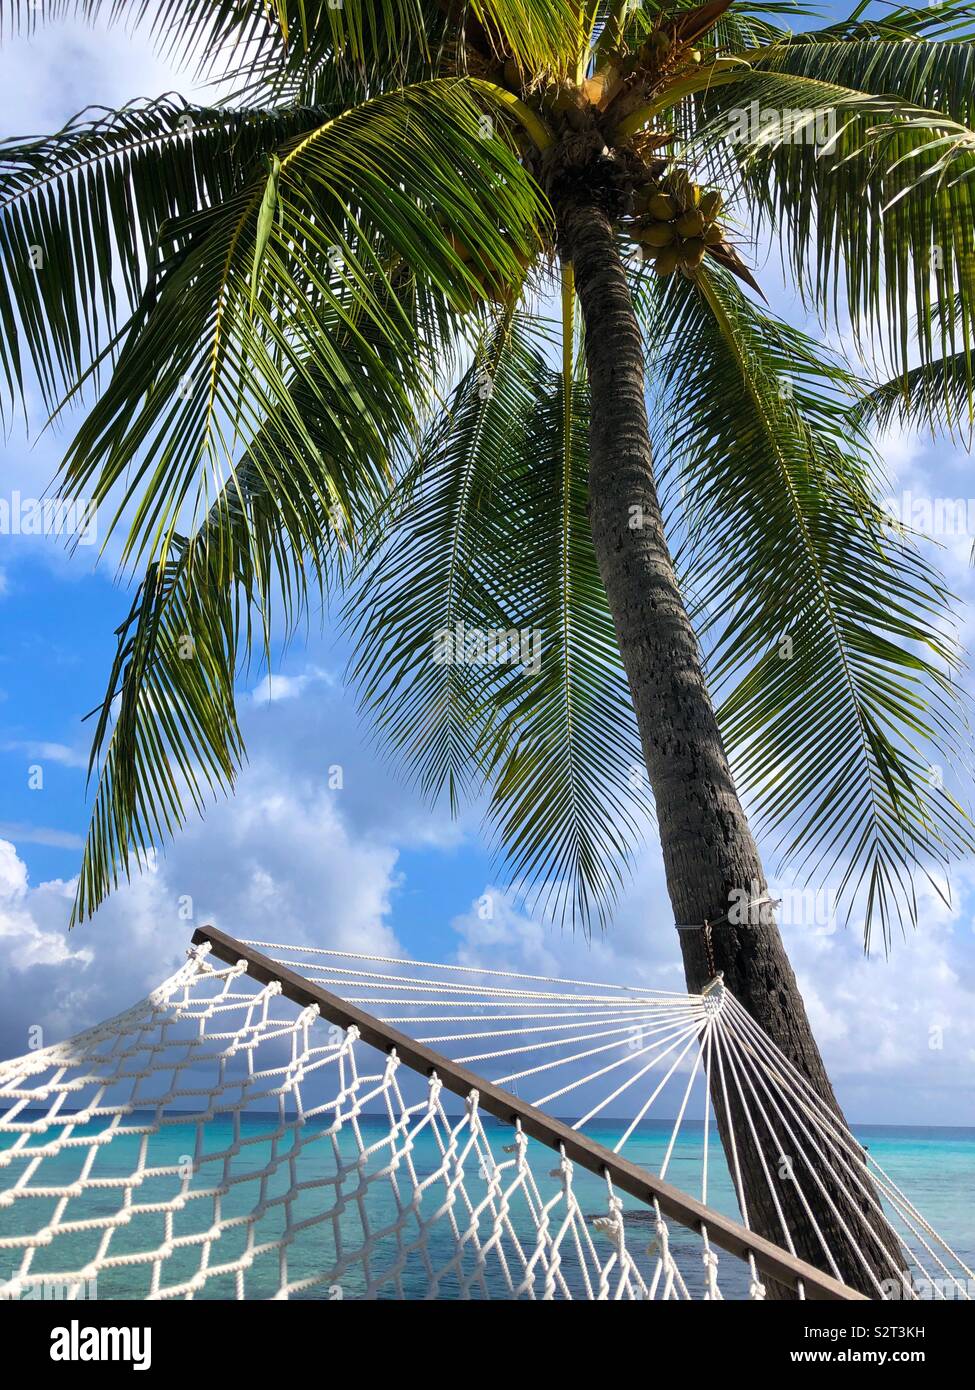 Coconut palm tree et hamac, Rangiroa, archipel des Tuamotu (Tuamotu), Polynésie française. Banque D'Images